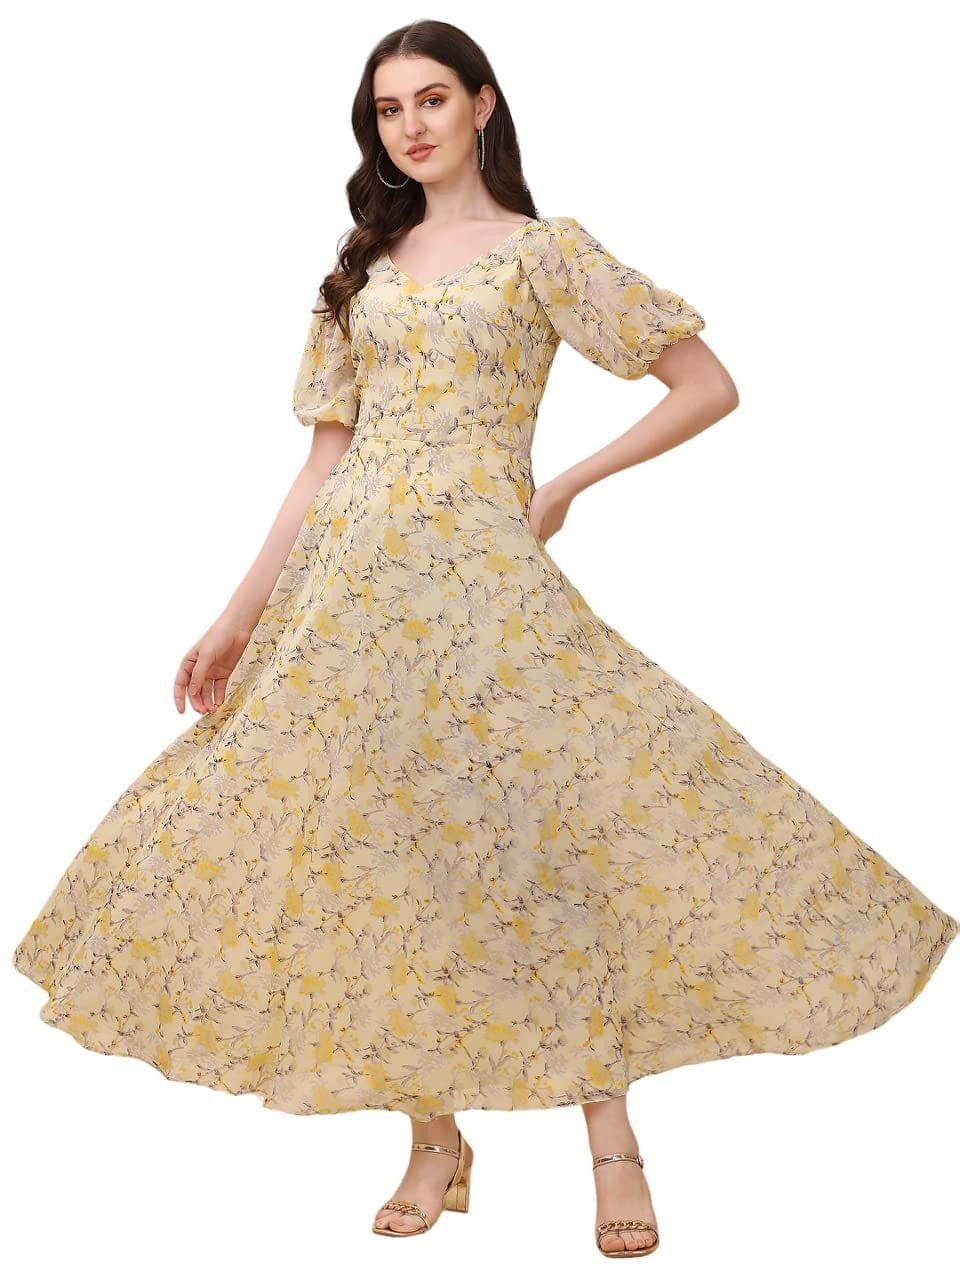 Best Floral Dress: अच्छे मॉडर्न लुक के लिए इन फ्लोरल ड्रेसेस को पहनकर, 399  रुपये की शुरुआती कीमत में उपलब्ध - buy online best floral dresses for women  at great offers on